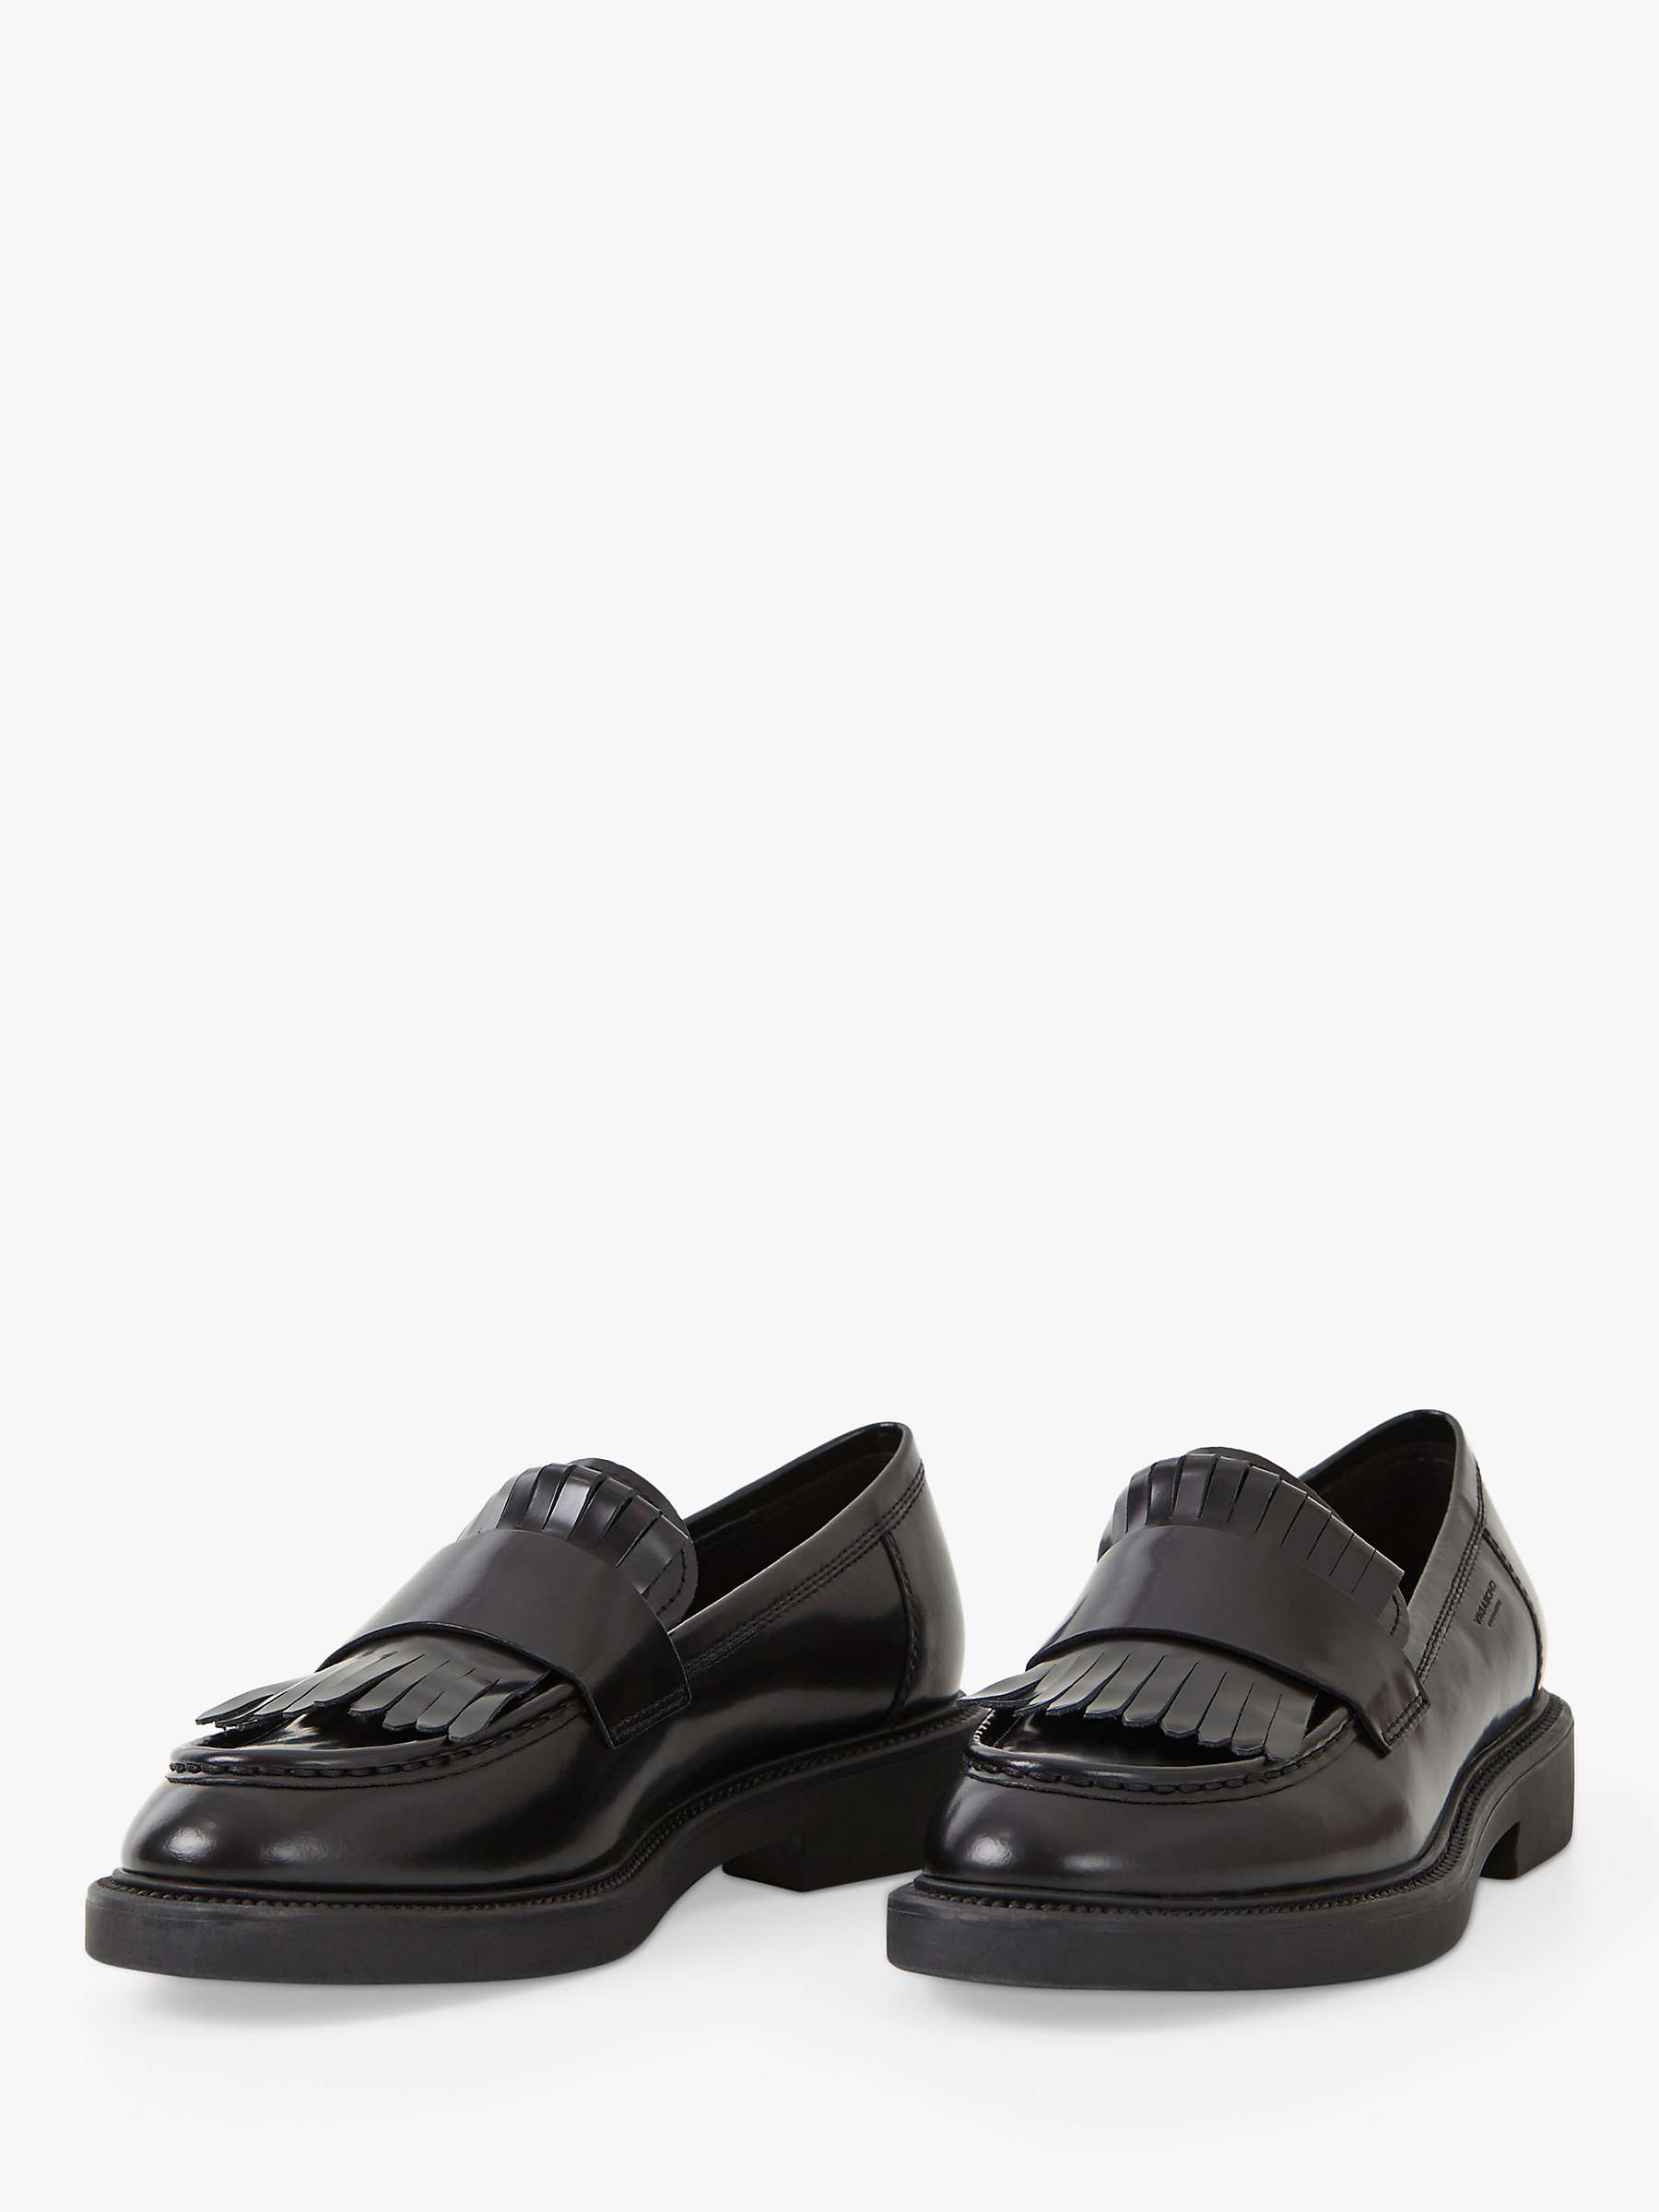 Buy Vagabond Shoemakers Alex W Fringe Loafers, Black Online at johnlewis.com